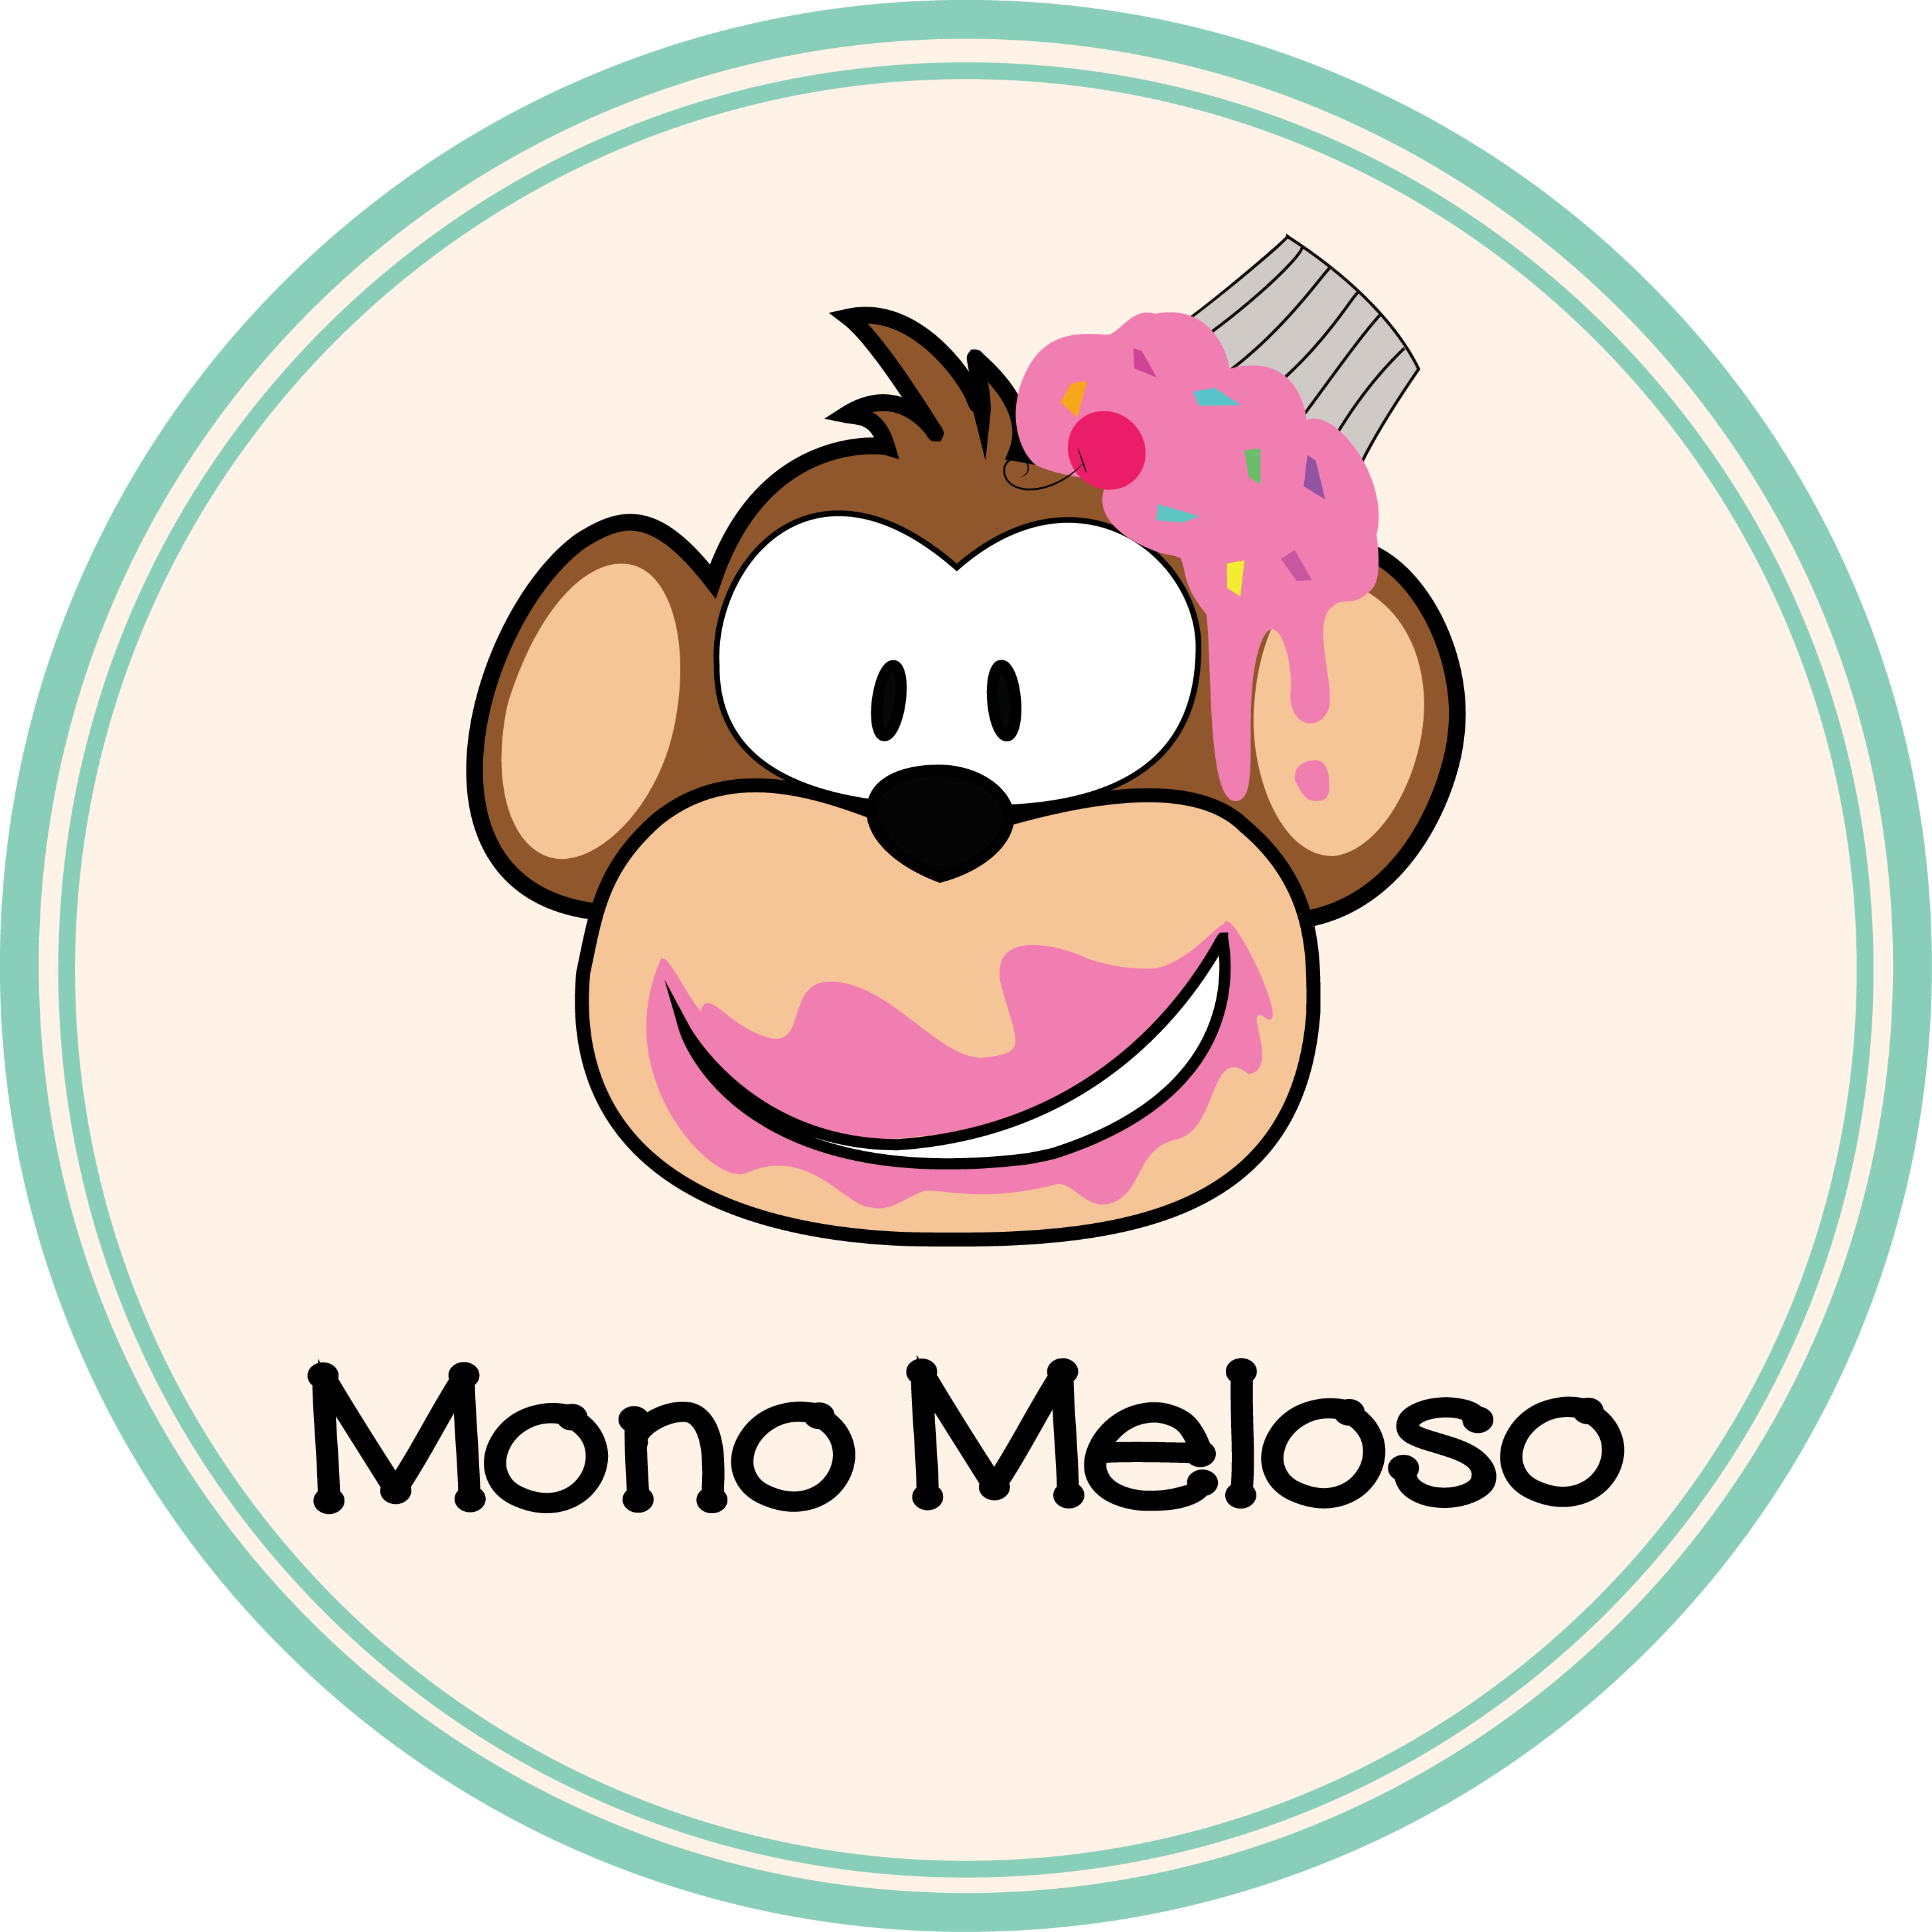 Mono Meloso